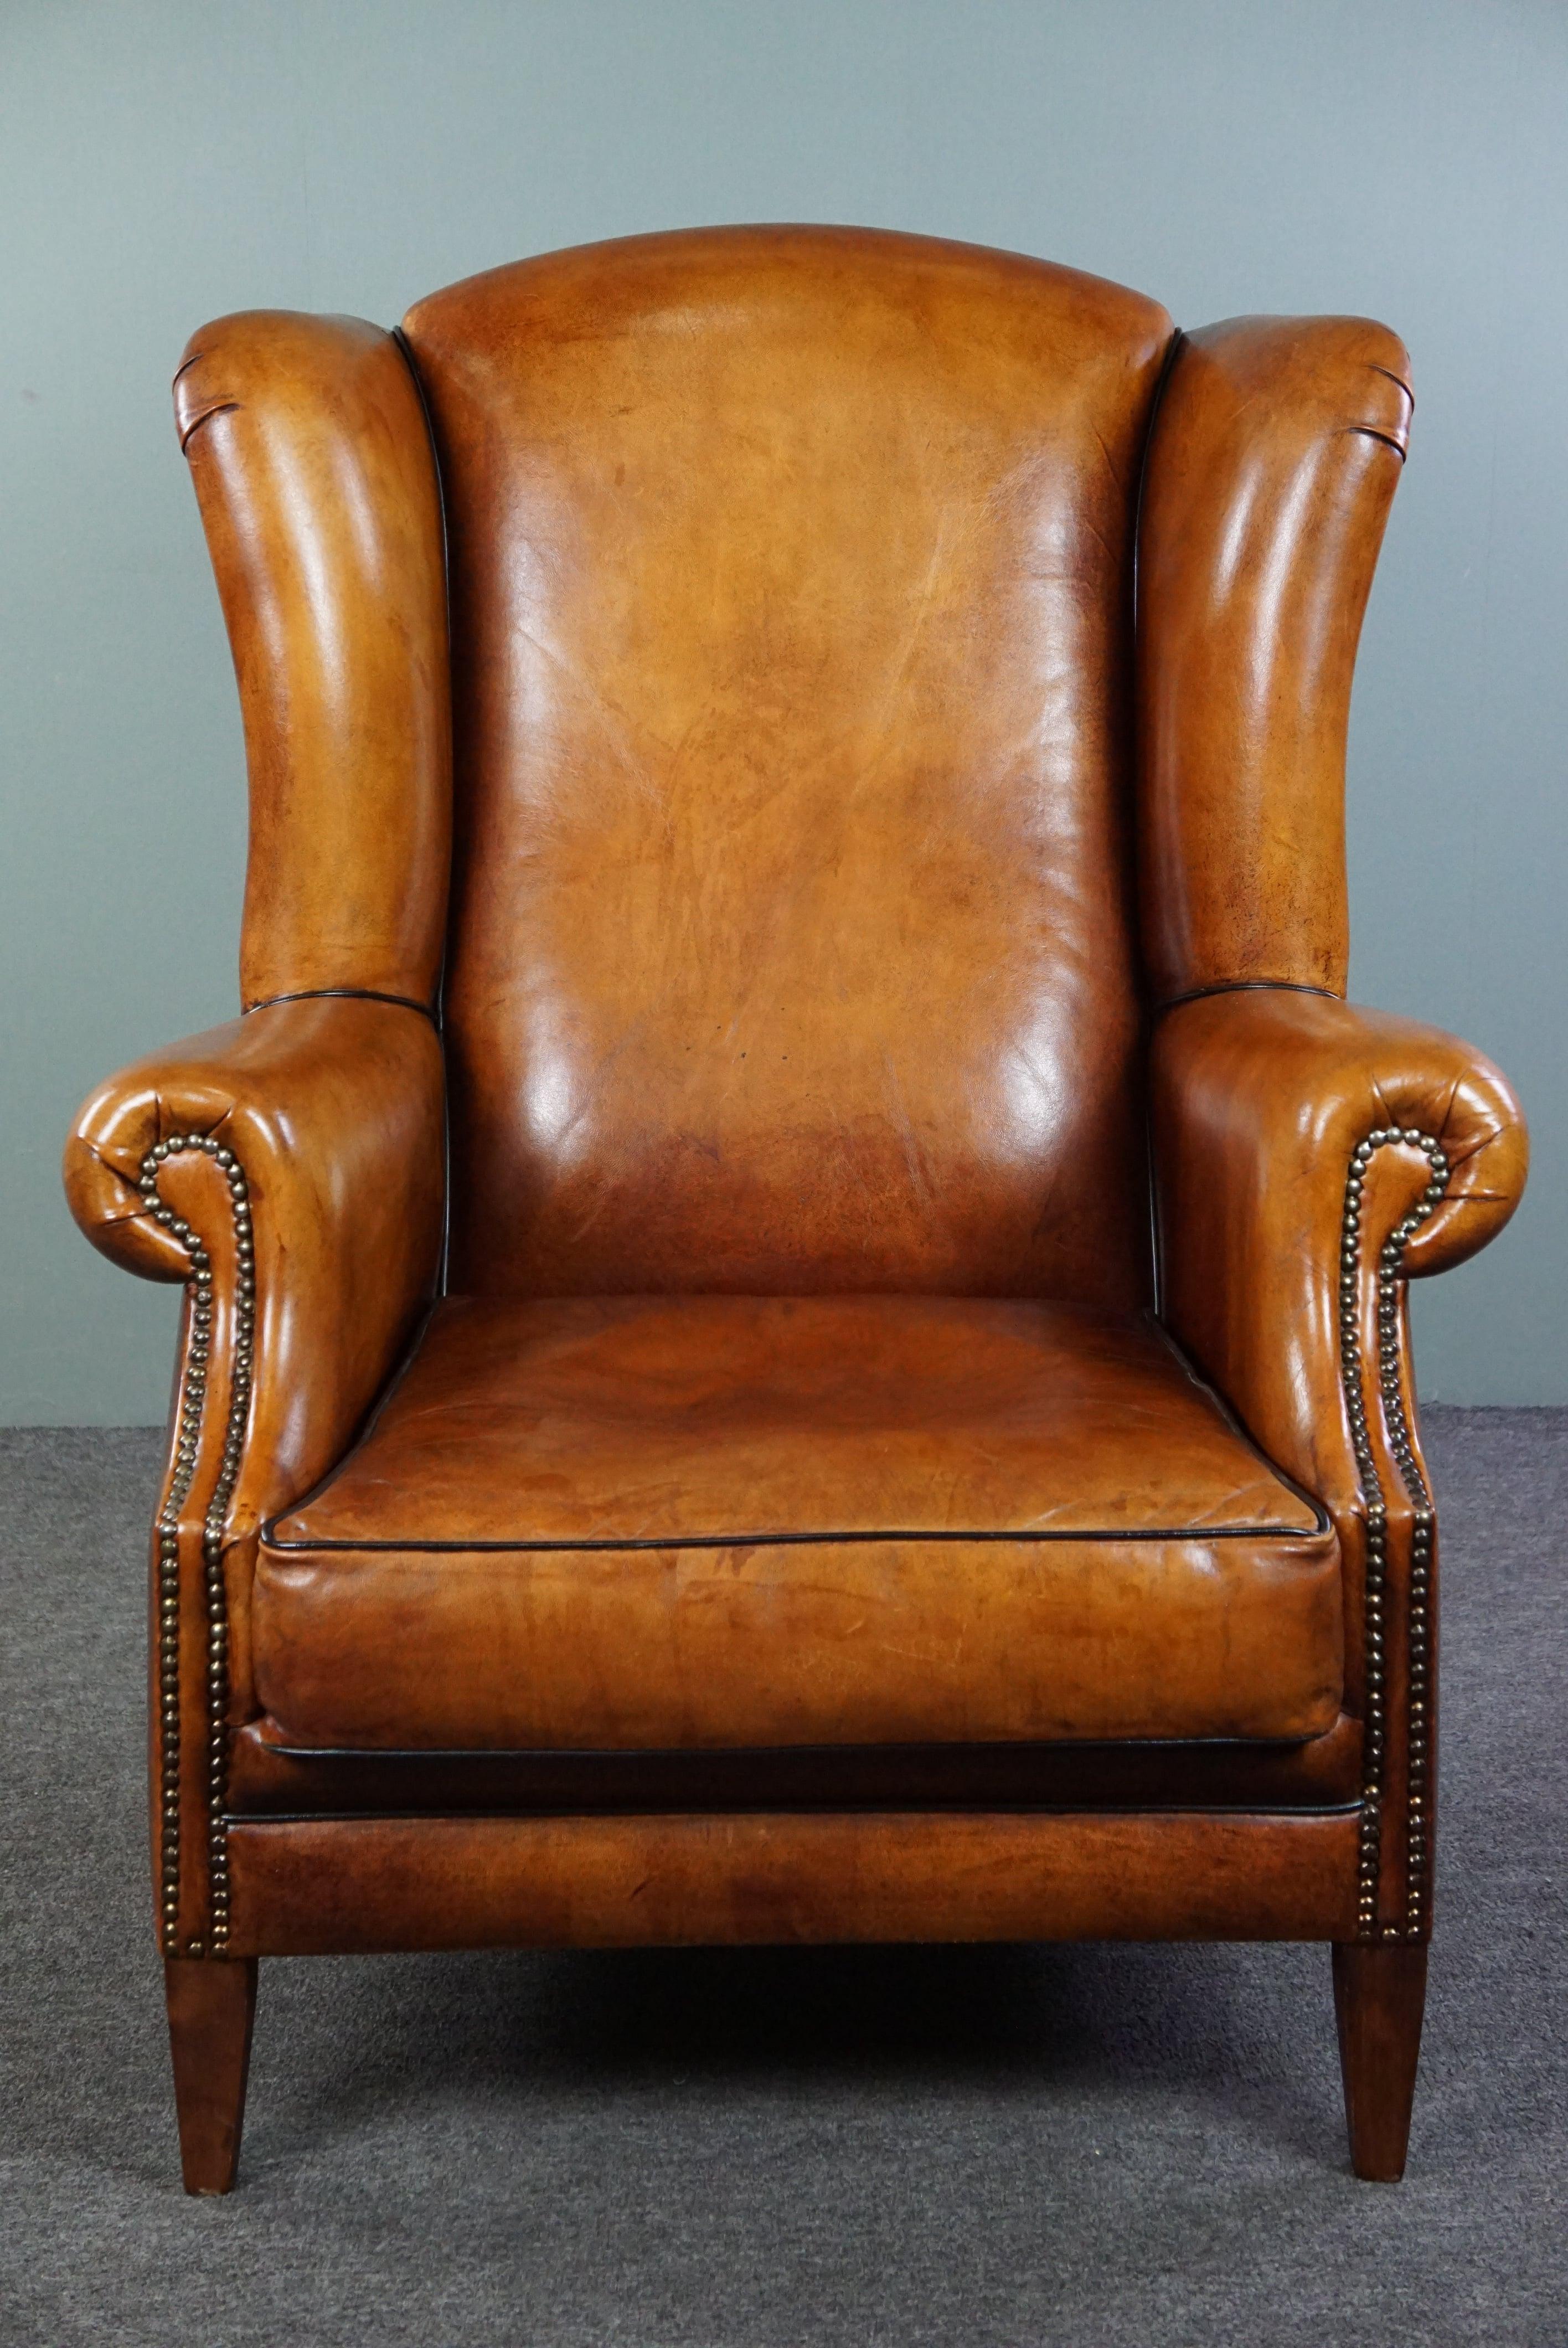 Angeboten wird dieser sehr warme Schafsfellstuhl, der rundherum mit schwarzen Paspeln versehen ist, was dem Stuhl ein zeitloses und schickes Aussehen verleiht. Das minimalistische Design bringt das unglaublich schöne Schafsleder zur Geltung. Die